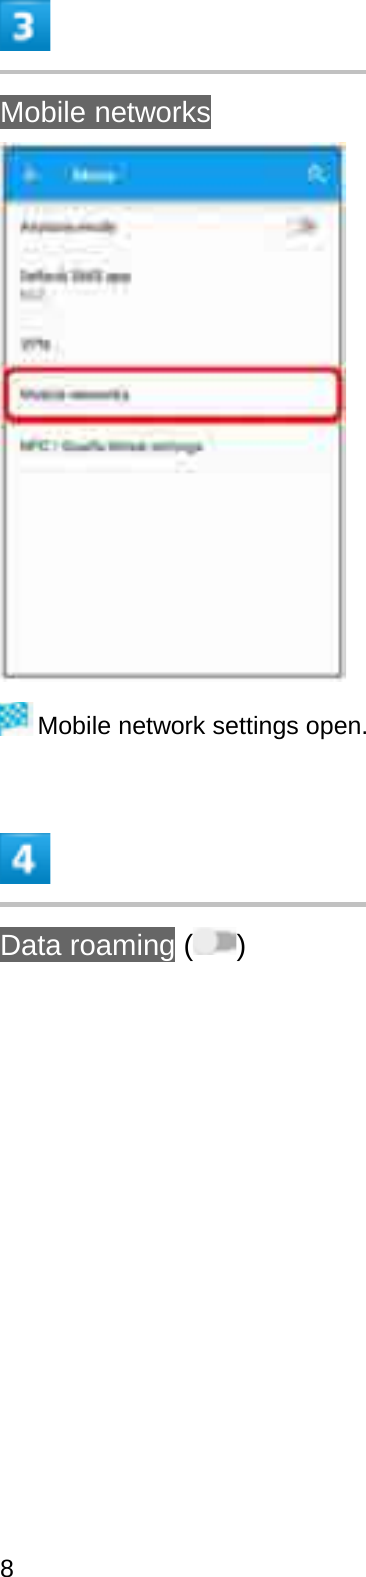 Mobile networksMobile network settings open.Data roaming ( )8